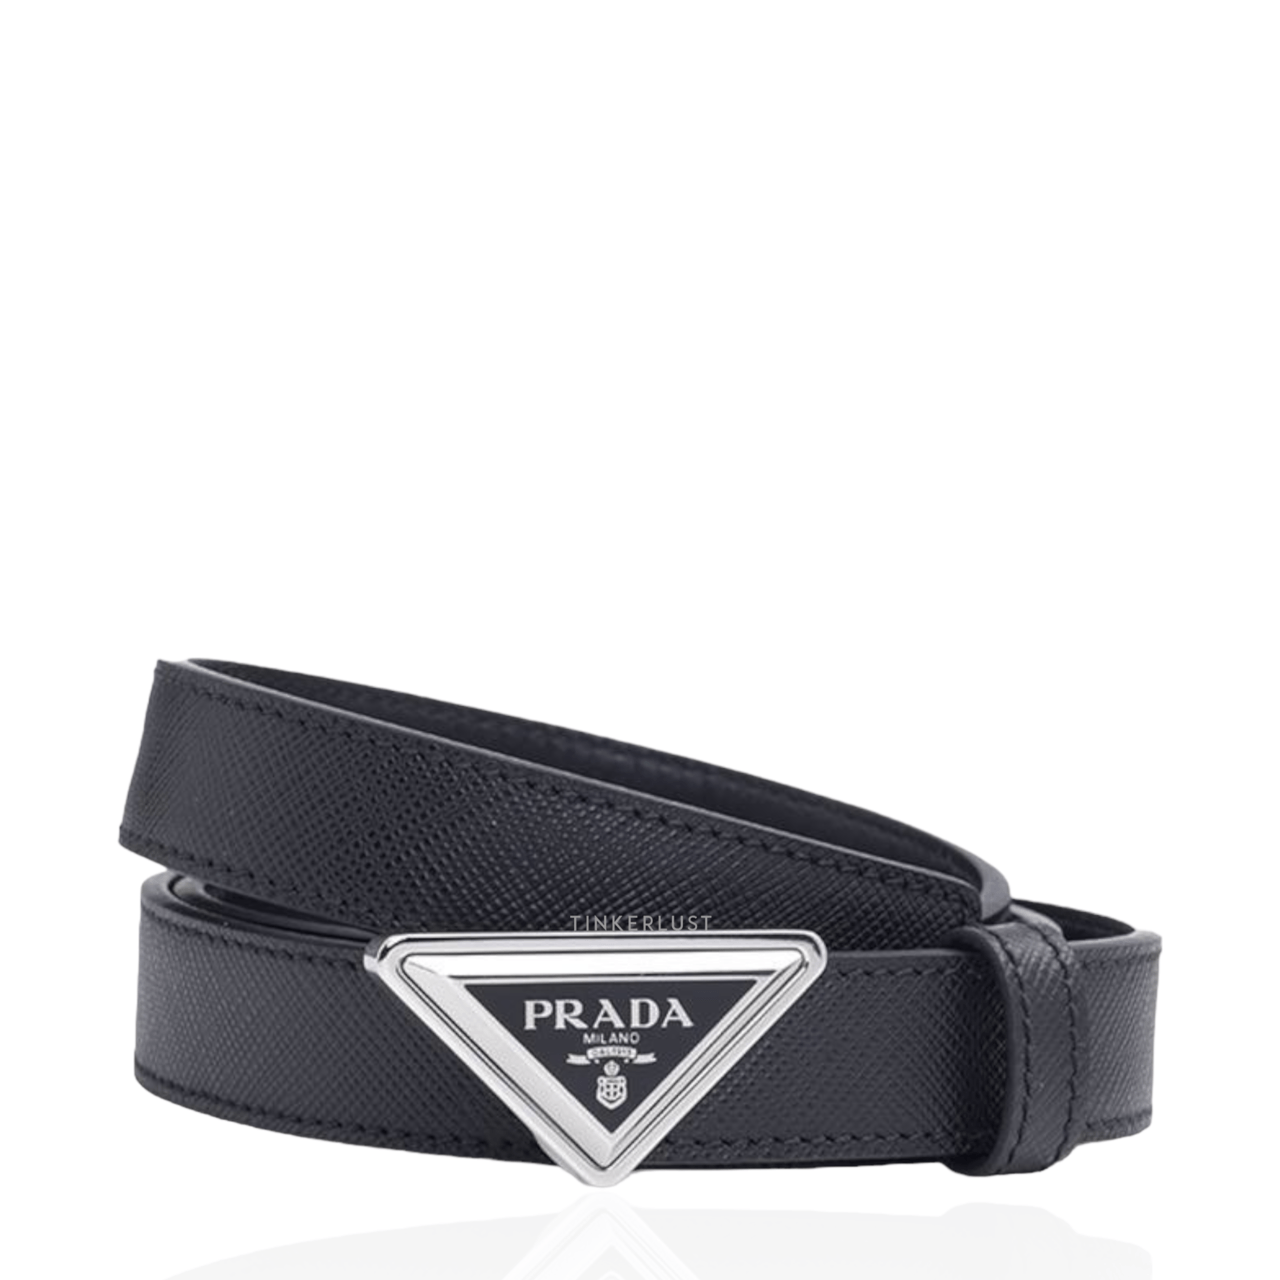 Prada Women Belt 2cm Black Saffiano Leather SHW with Triangular Logo Buckle